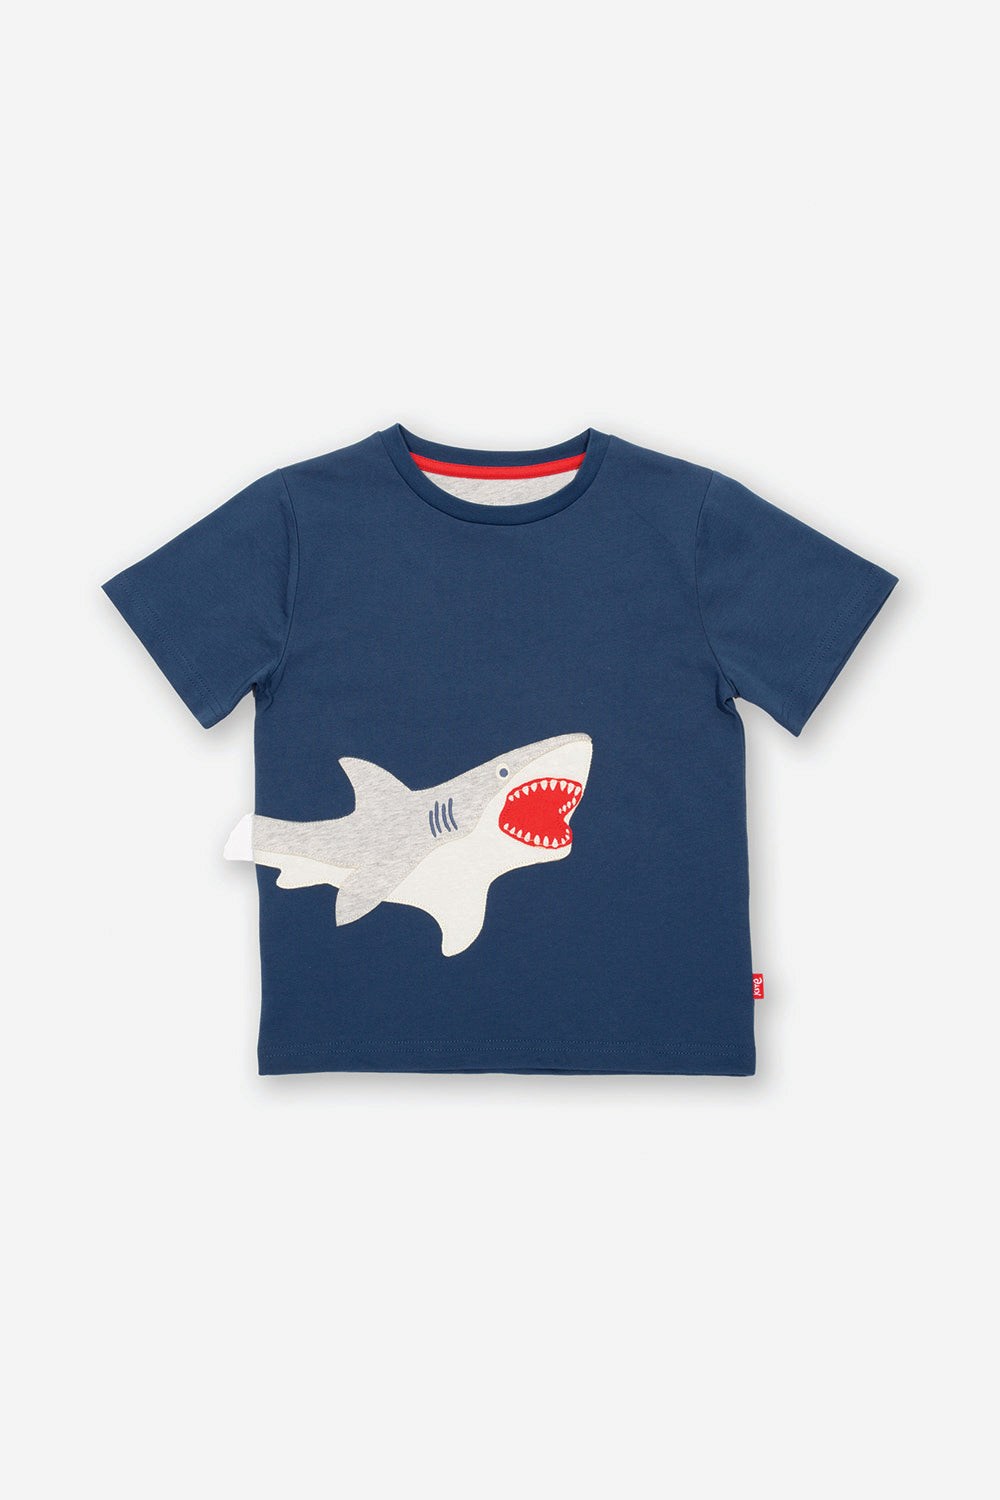 Shark Kids Organic Cotton T-shirt -